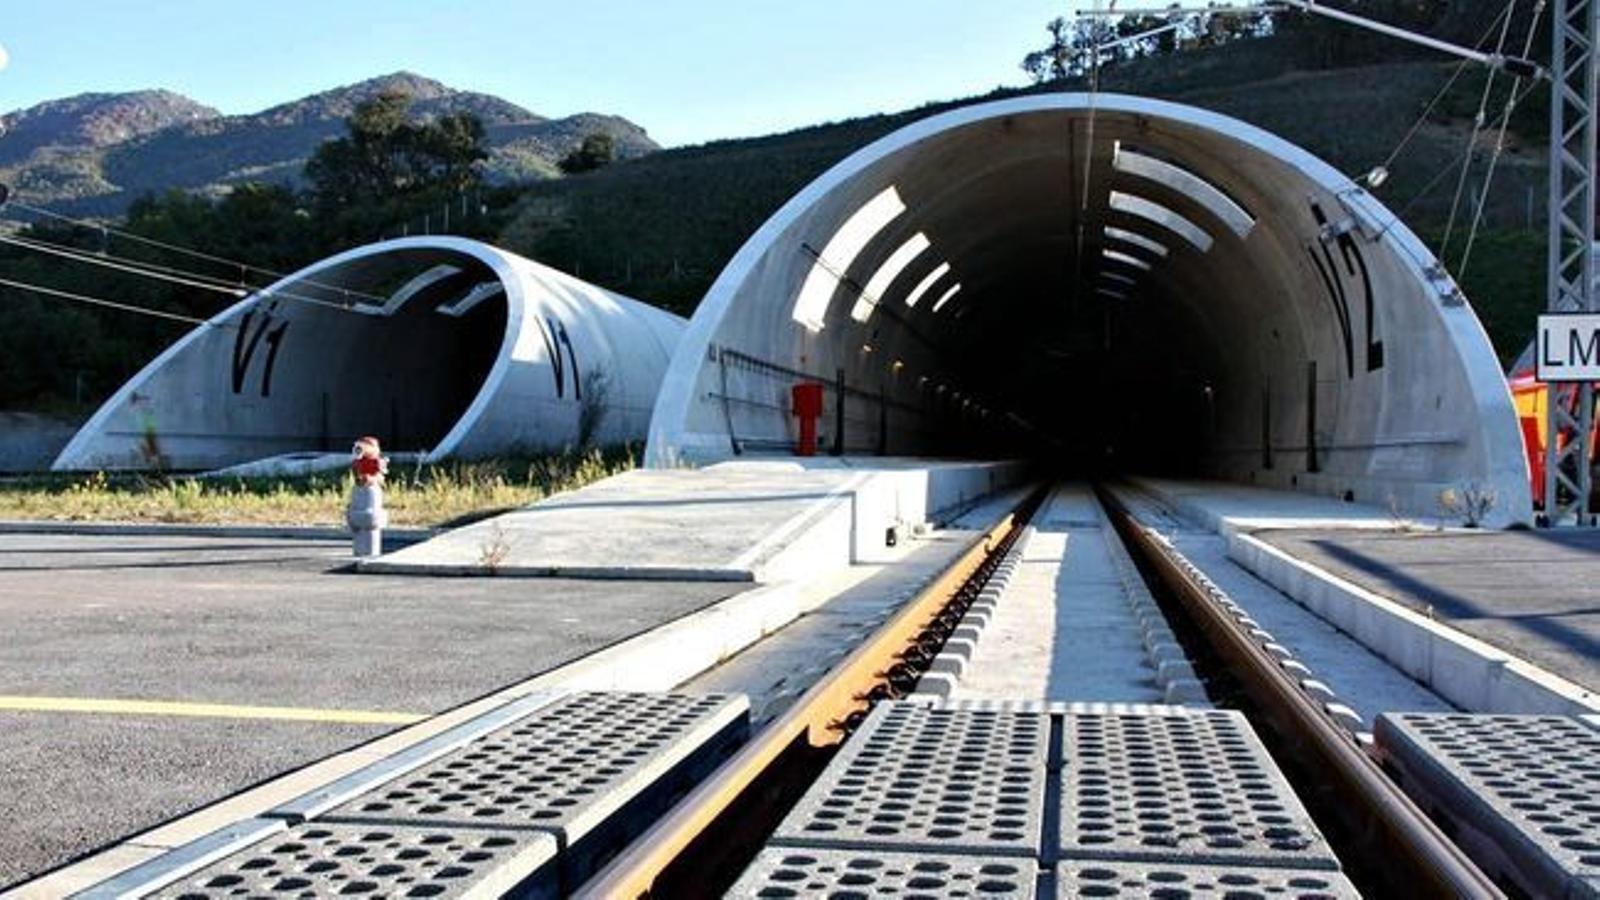 Entrada akl túnel del Petús, que ara passarà a gestionar una societat conjunta entre Espanya i França. / ACN